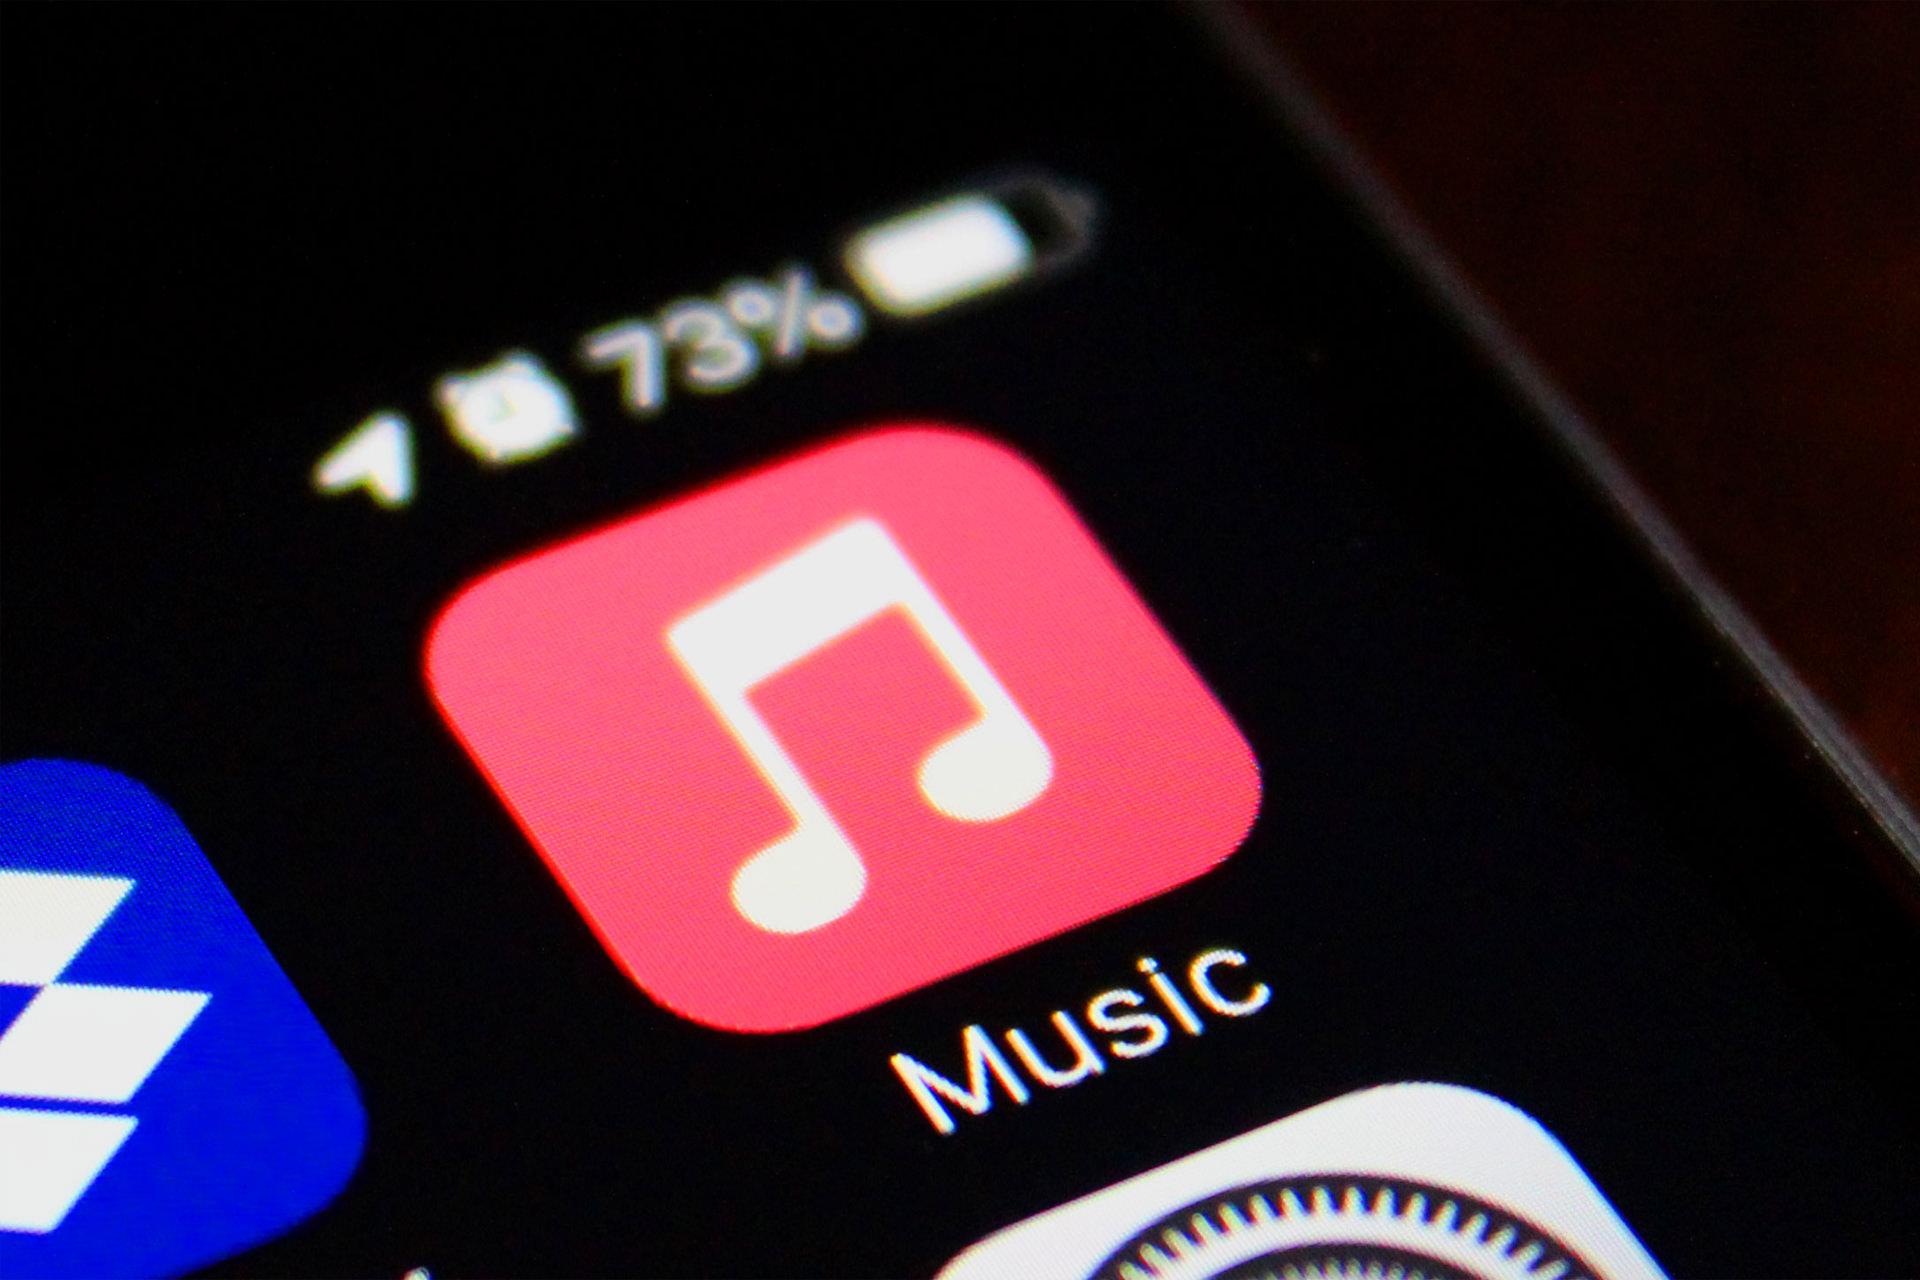 نمای نزدیک آیکون اپل موزیک / Apple Music در iOS شارژ 73 درصد آیفون